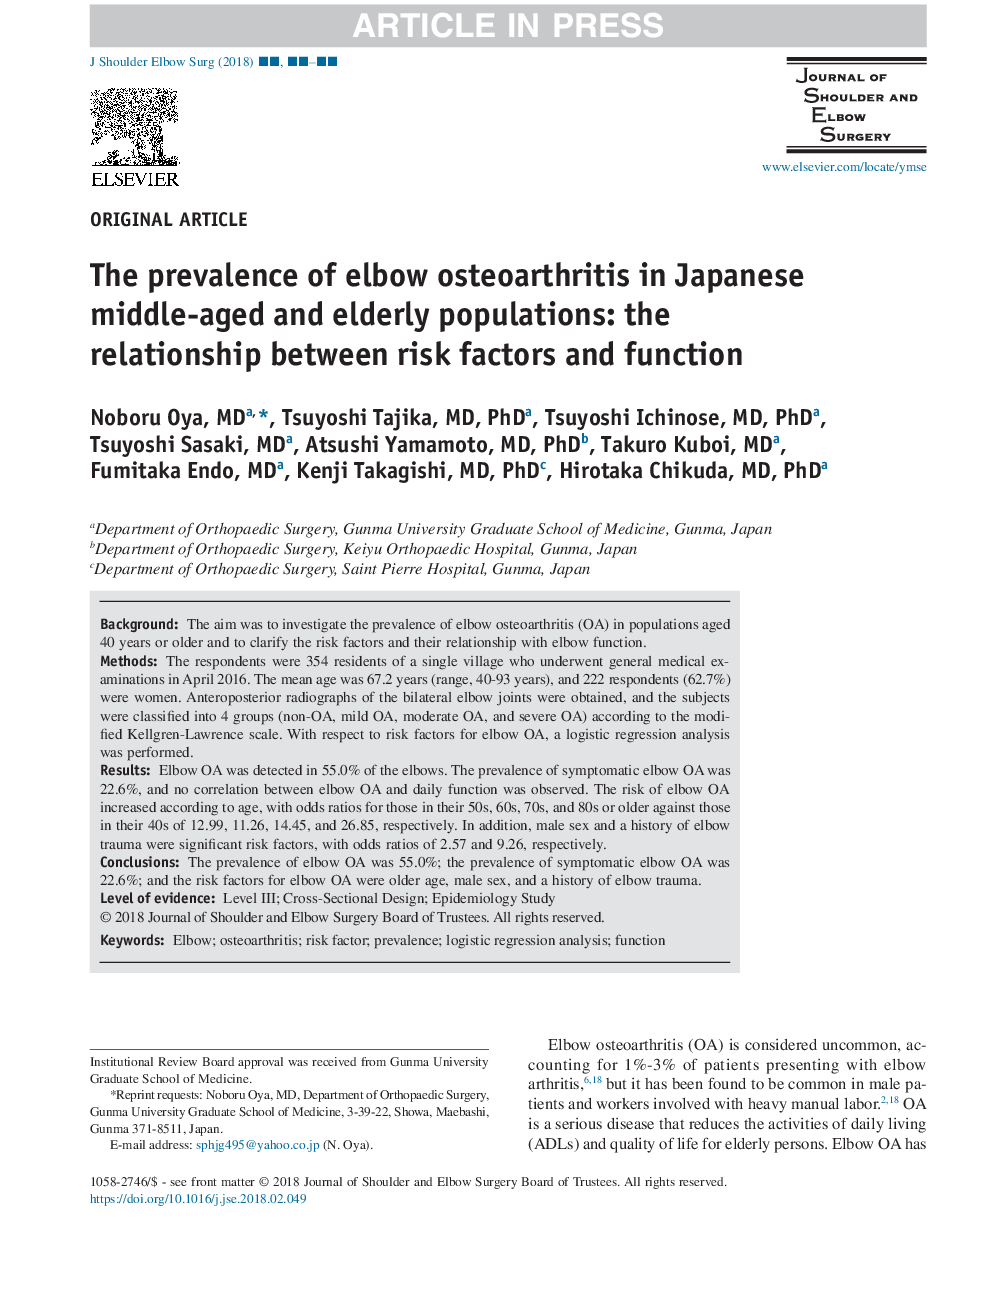 شیوع استئو آرتریت آرنج در جمعیت میانسالان و سالمندان ژاپن: ارتباط بین عوامل خطر و عملکرد 